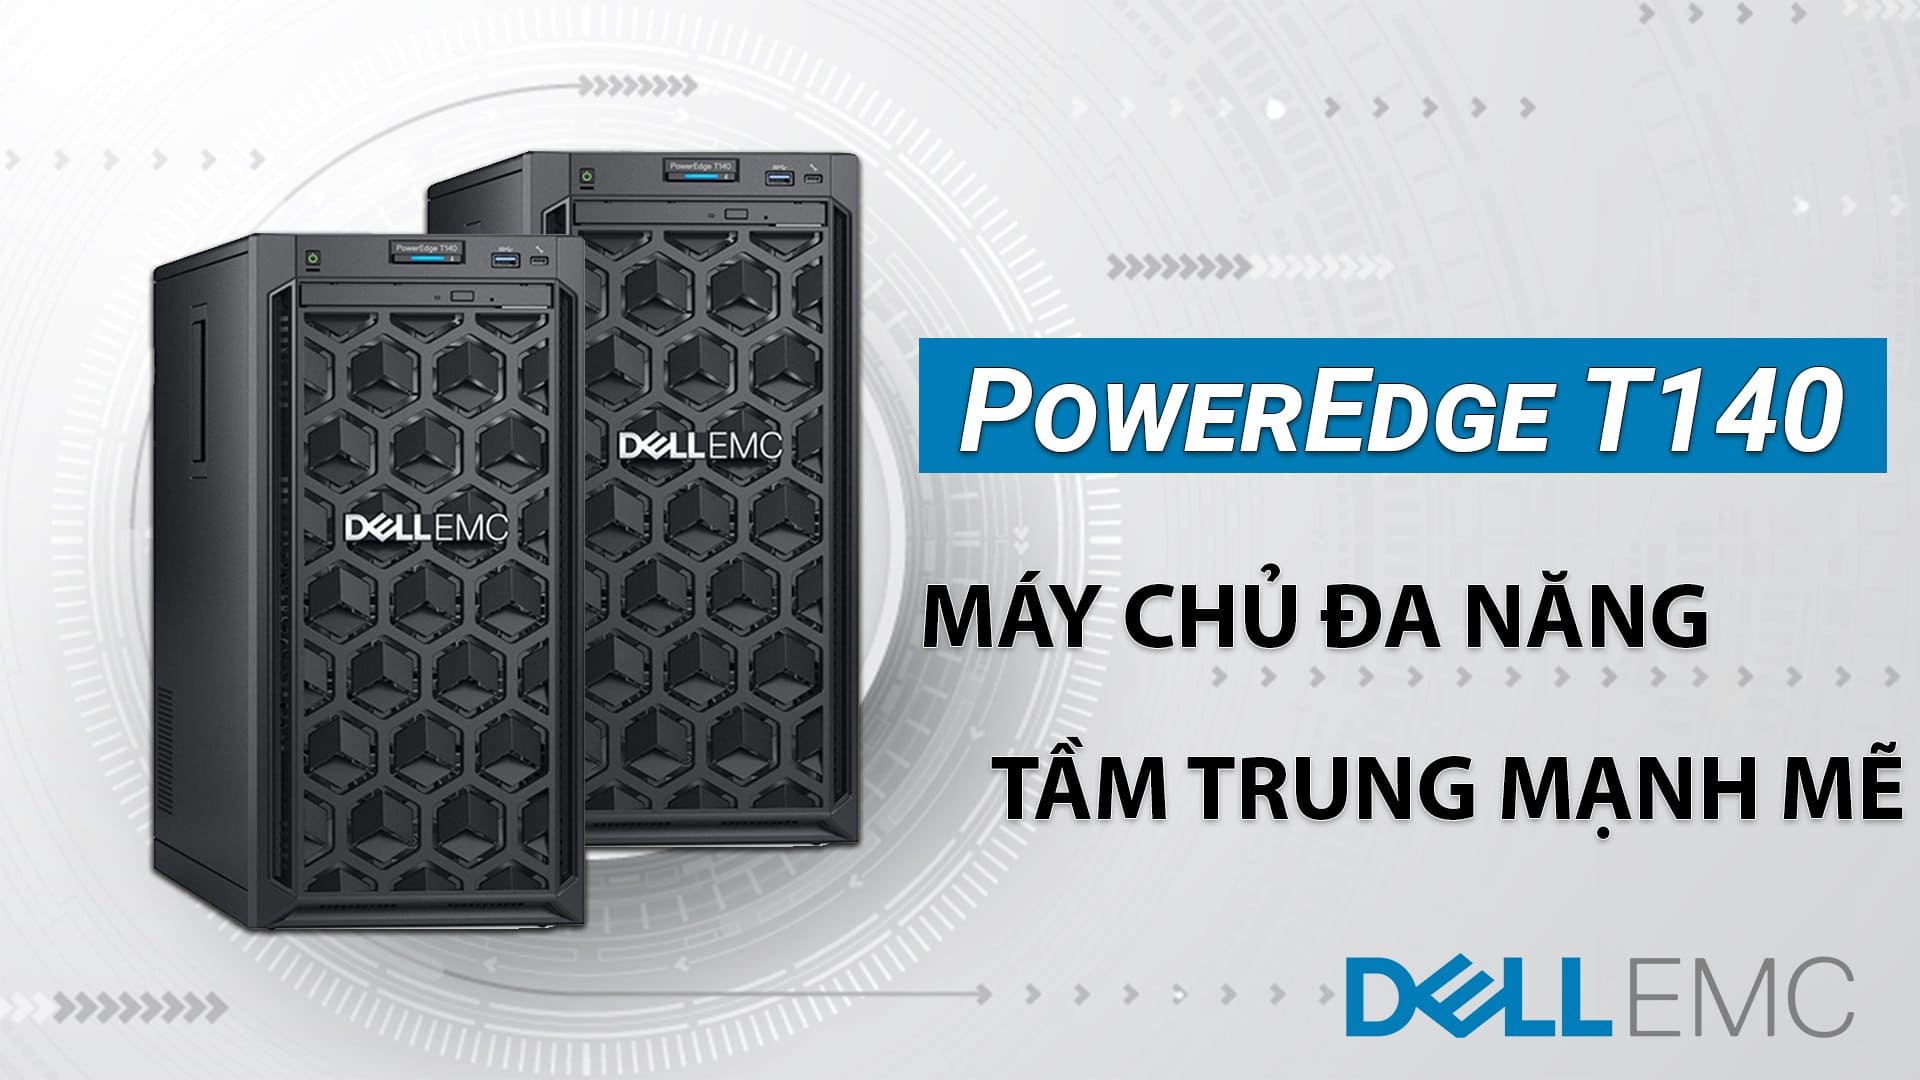 Máy chủ Dell EMC PowerEdge T140 - Máy chủ đa năng tầm trung mạnh mẽ